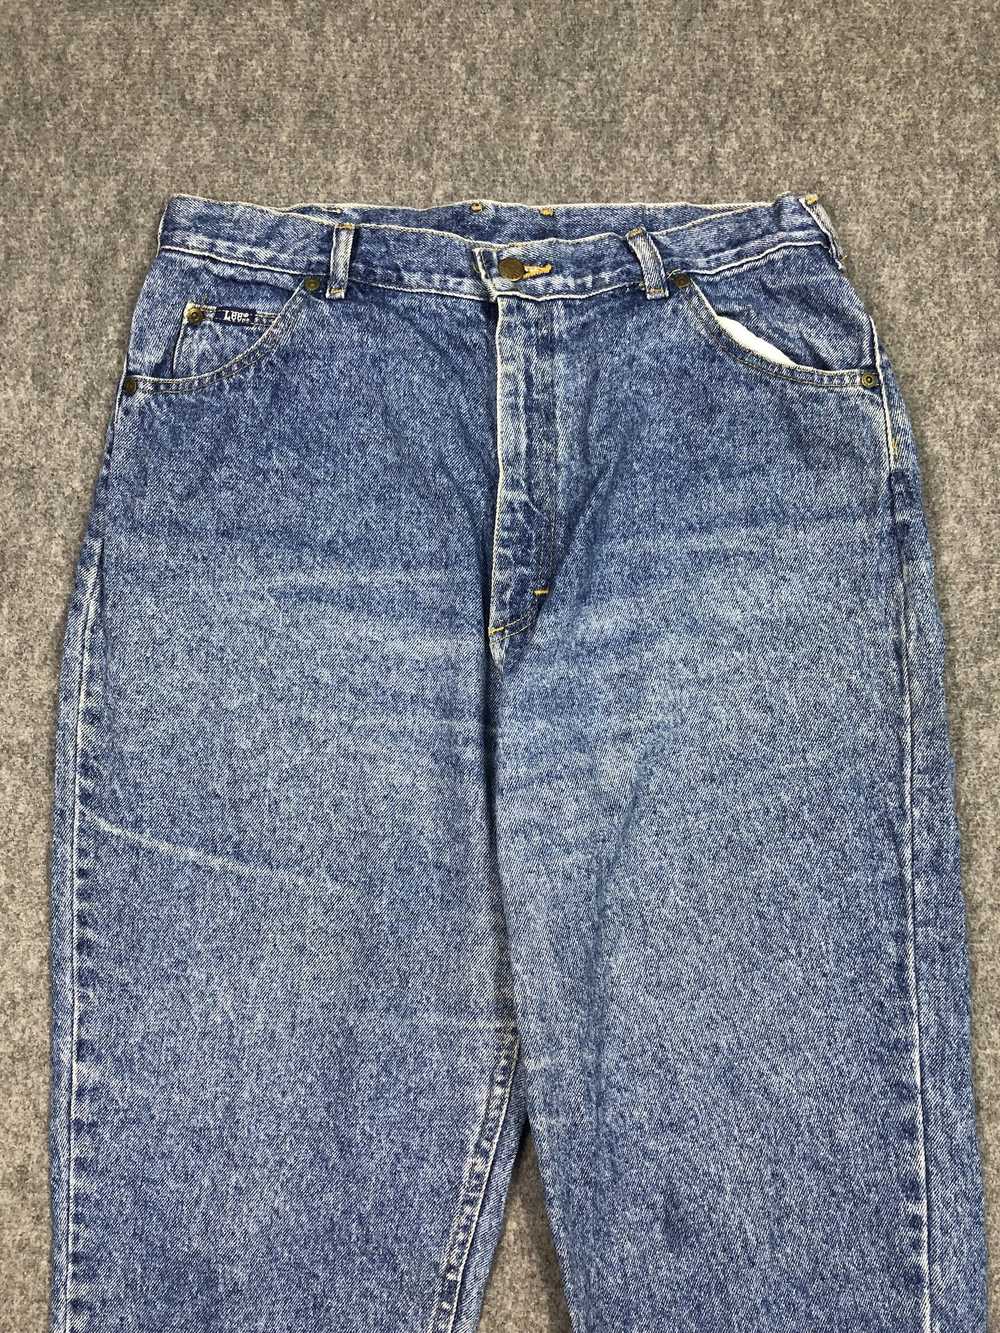 Lee × Vintage Vintage Lee Light Blue Jeans 33x29.5 - image 2